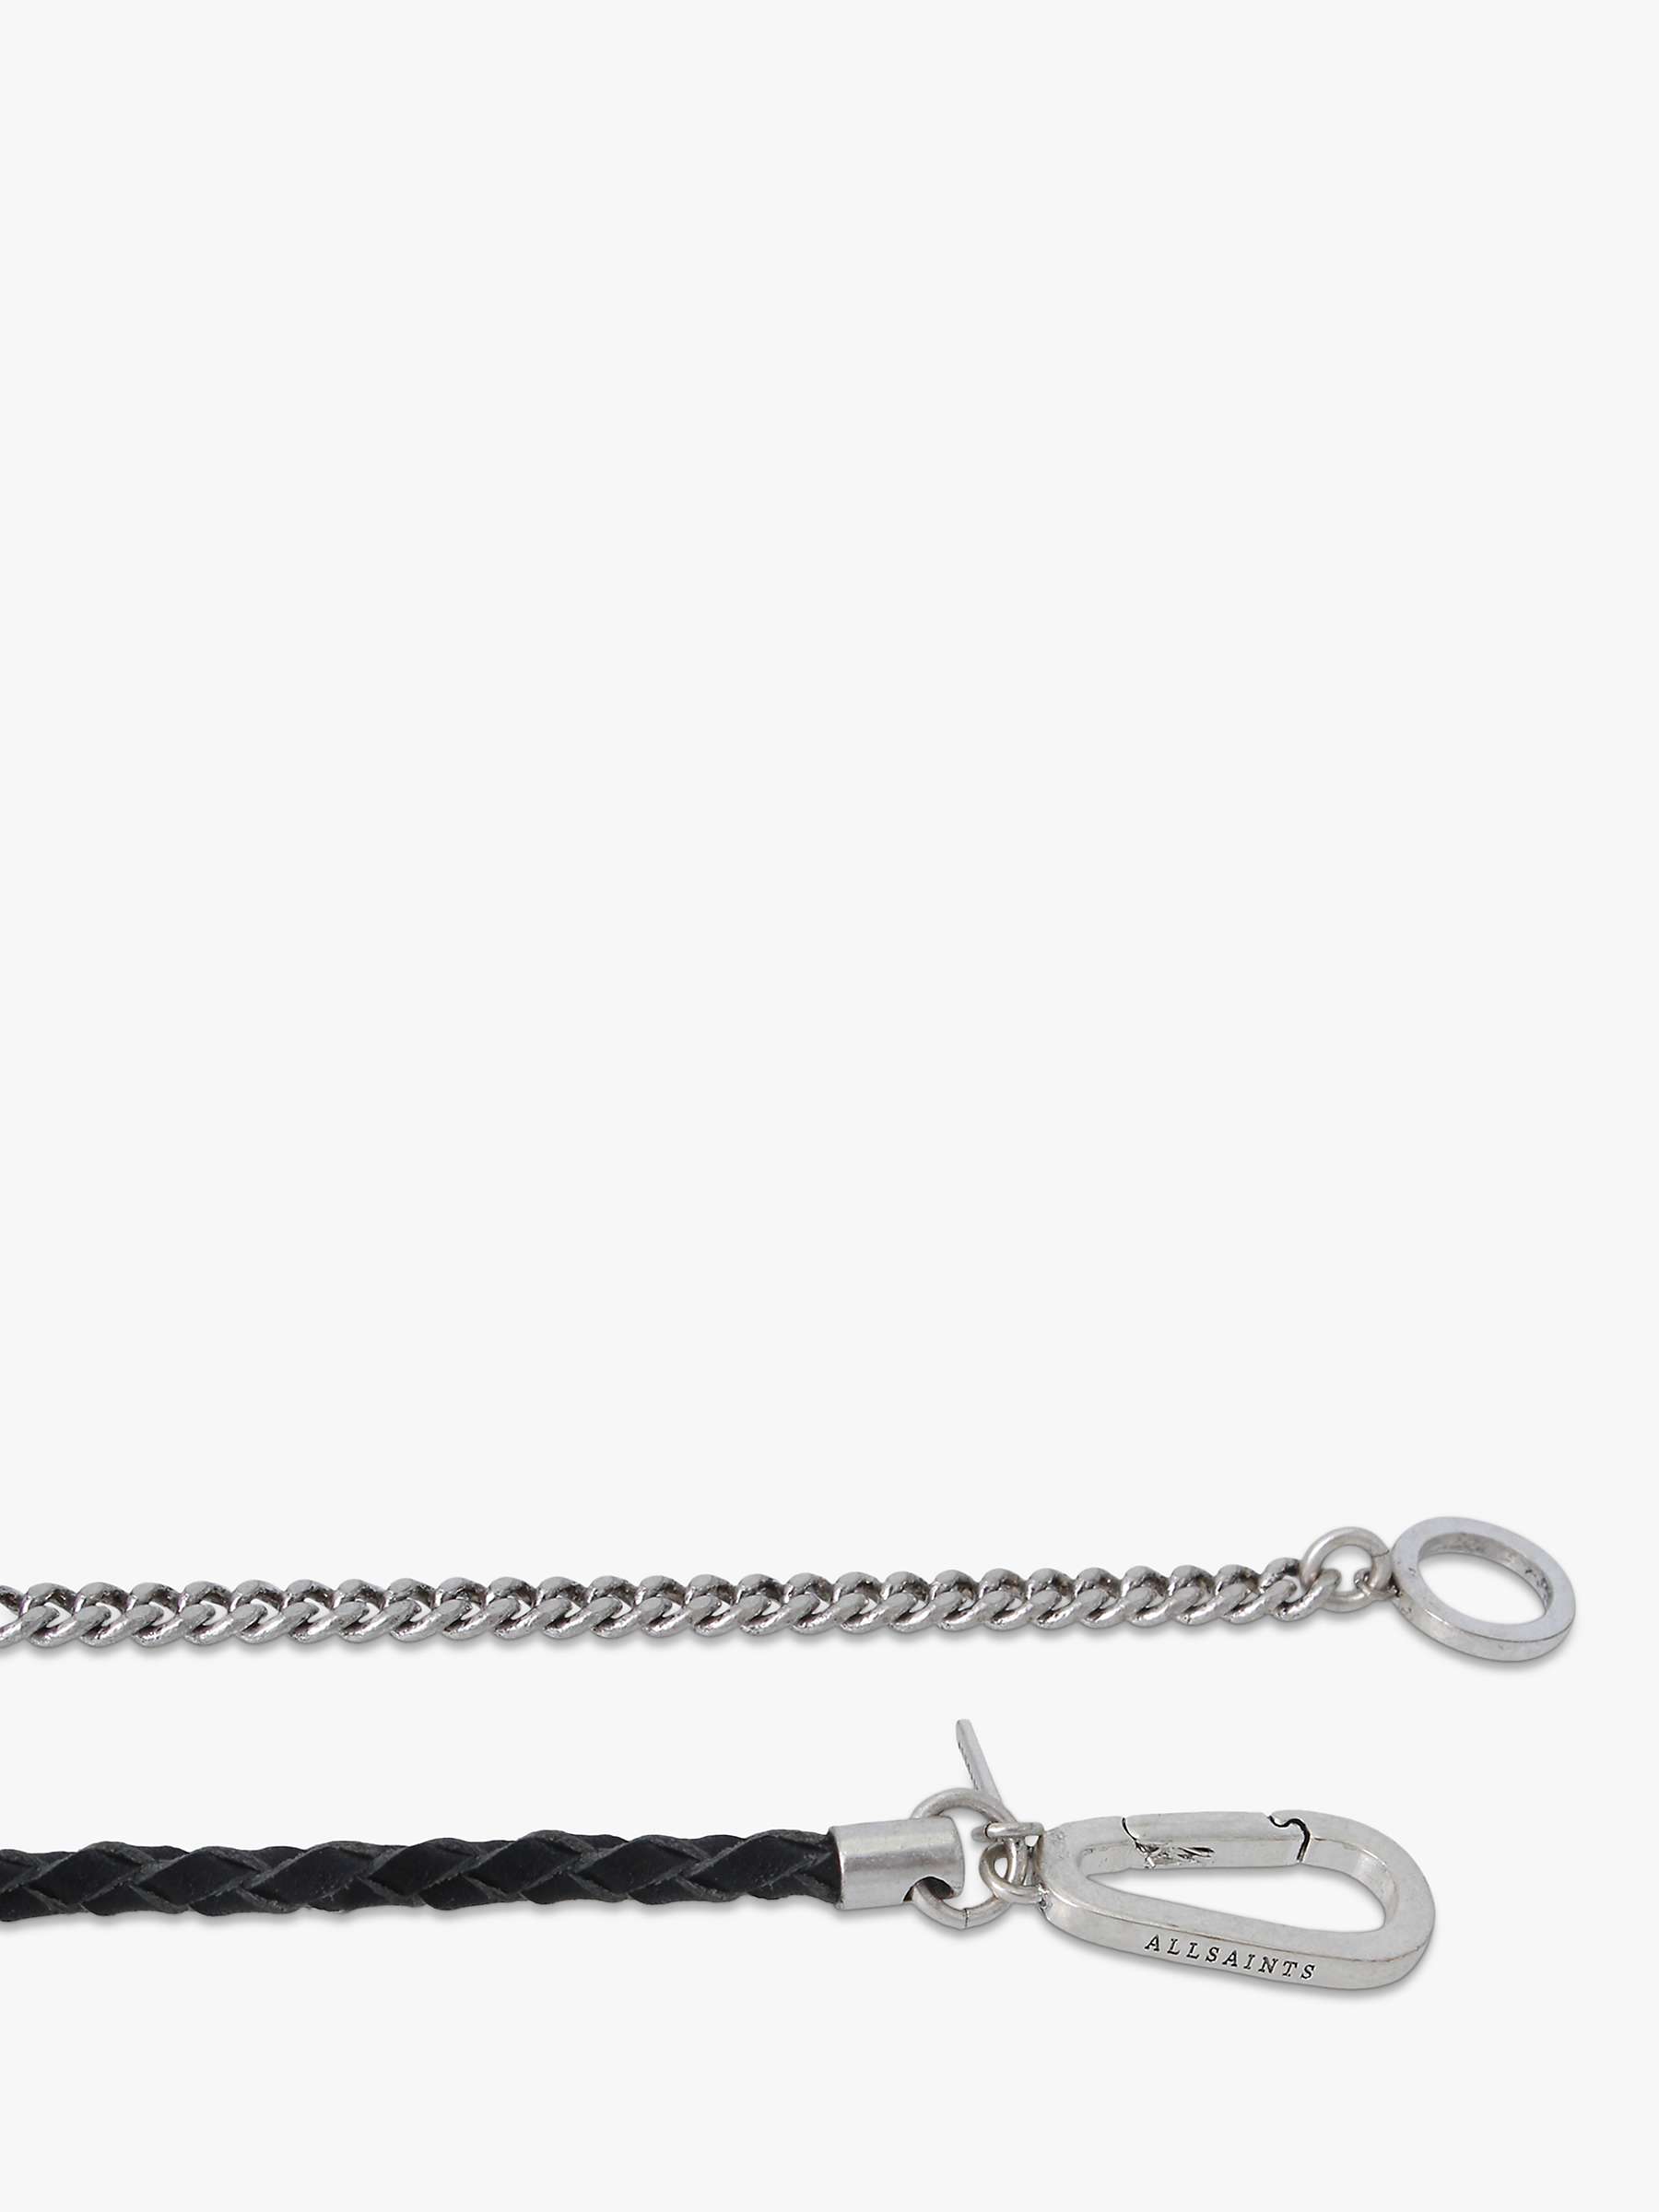 Buy AllSaints Men's Mix Leather Chain Flex Bracelet, Silver Online at johnlewis.com